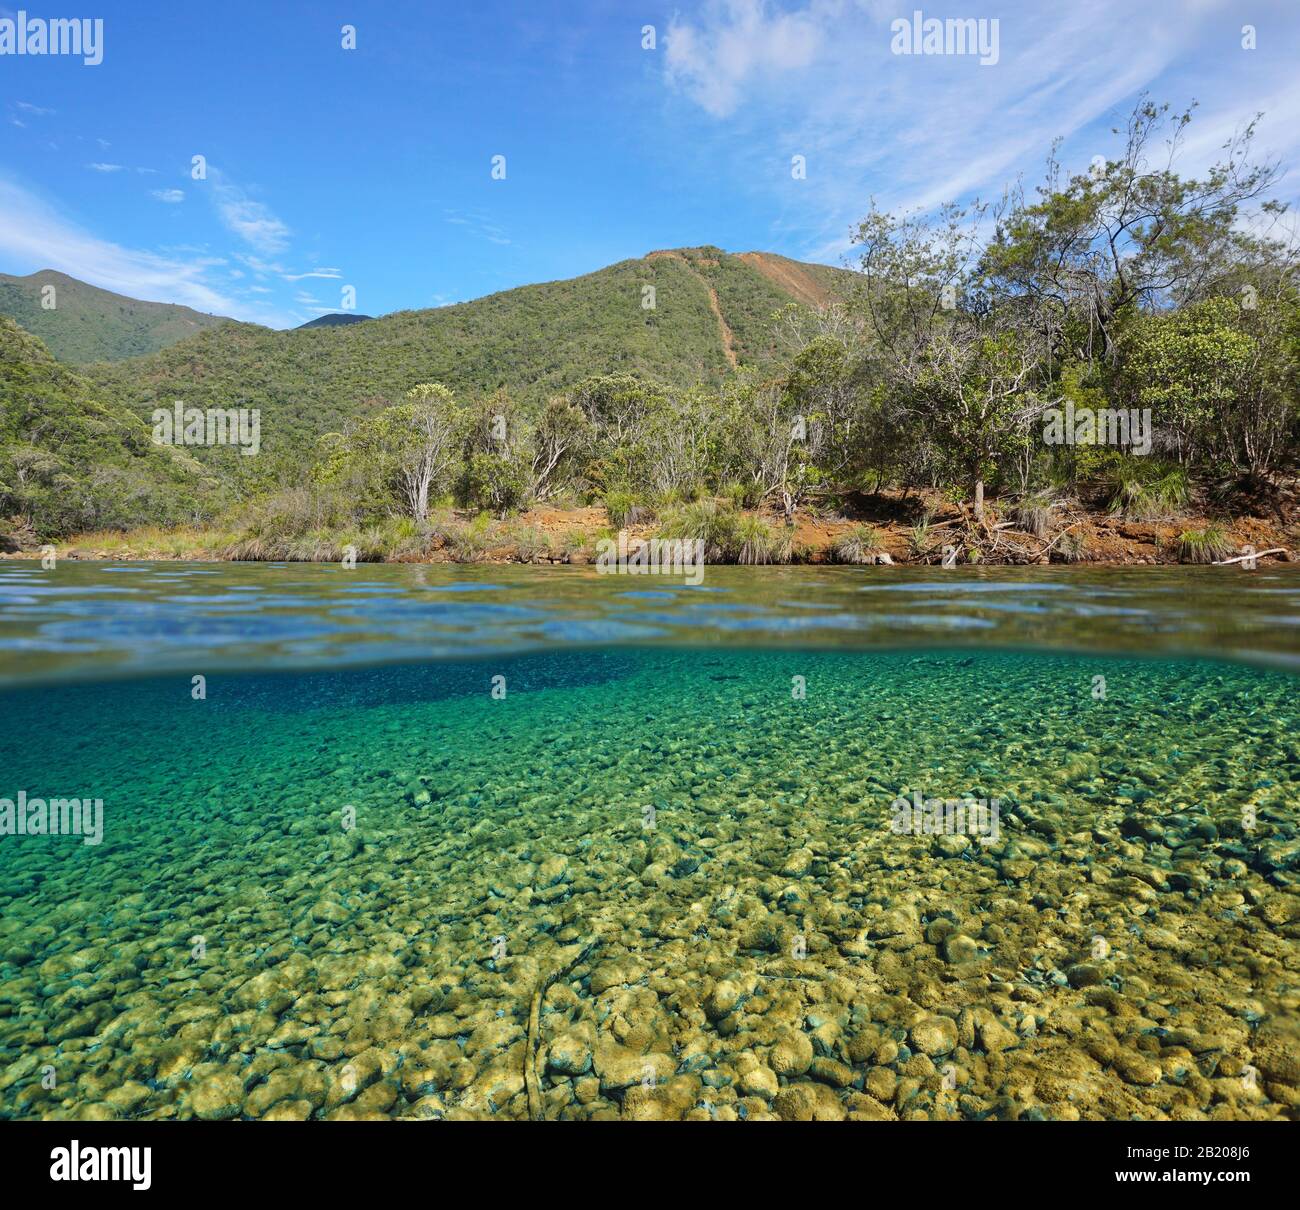 Paysage fluvial avec eau claire en Nouvelle-Calédonie, vue partagée sur et sous la surface de l'eau, Océanie, Grande Terre, Dumbea Banque D'Images